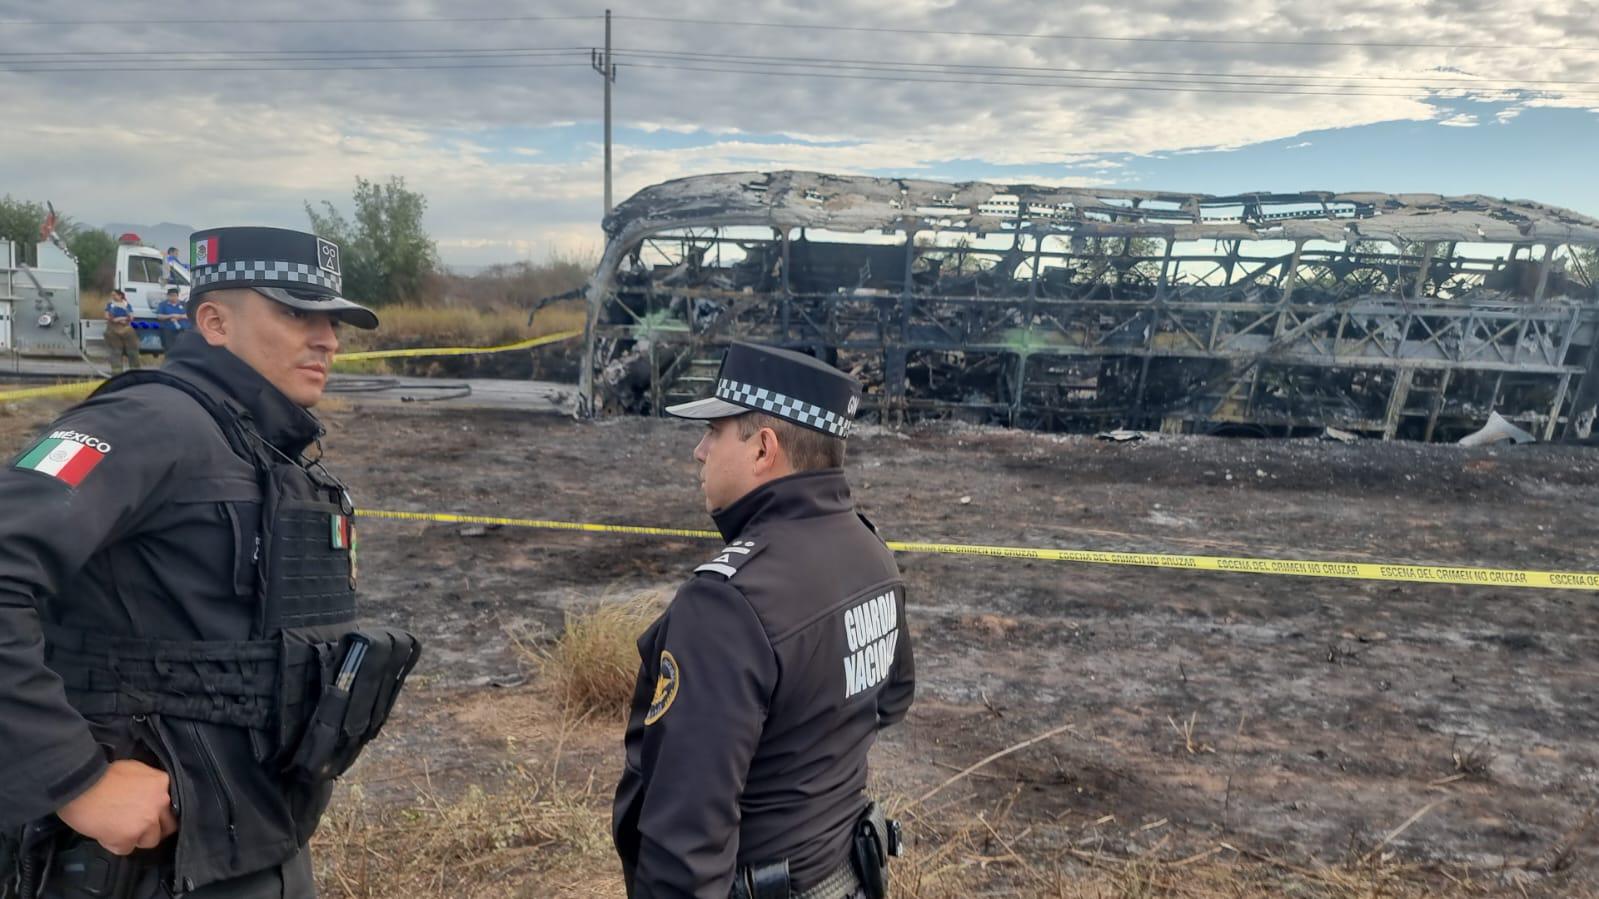 $!Choque entre camión de pasajeros y tráiler deja 22 muertos y 18 heridos en Elota